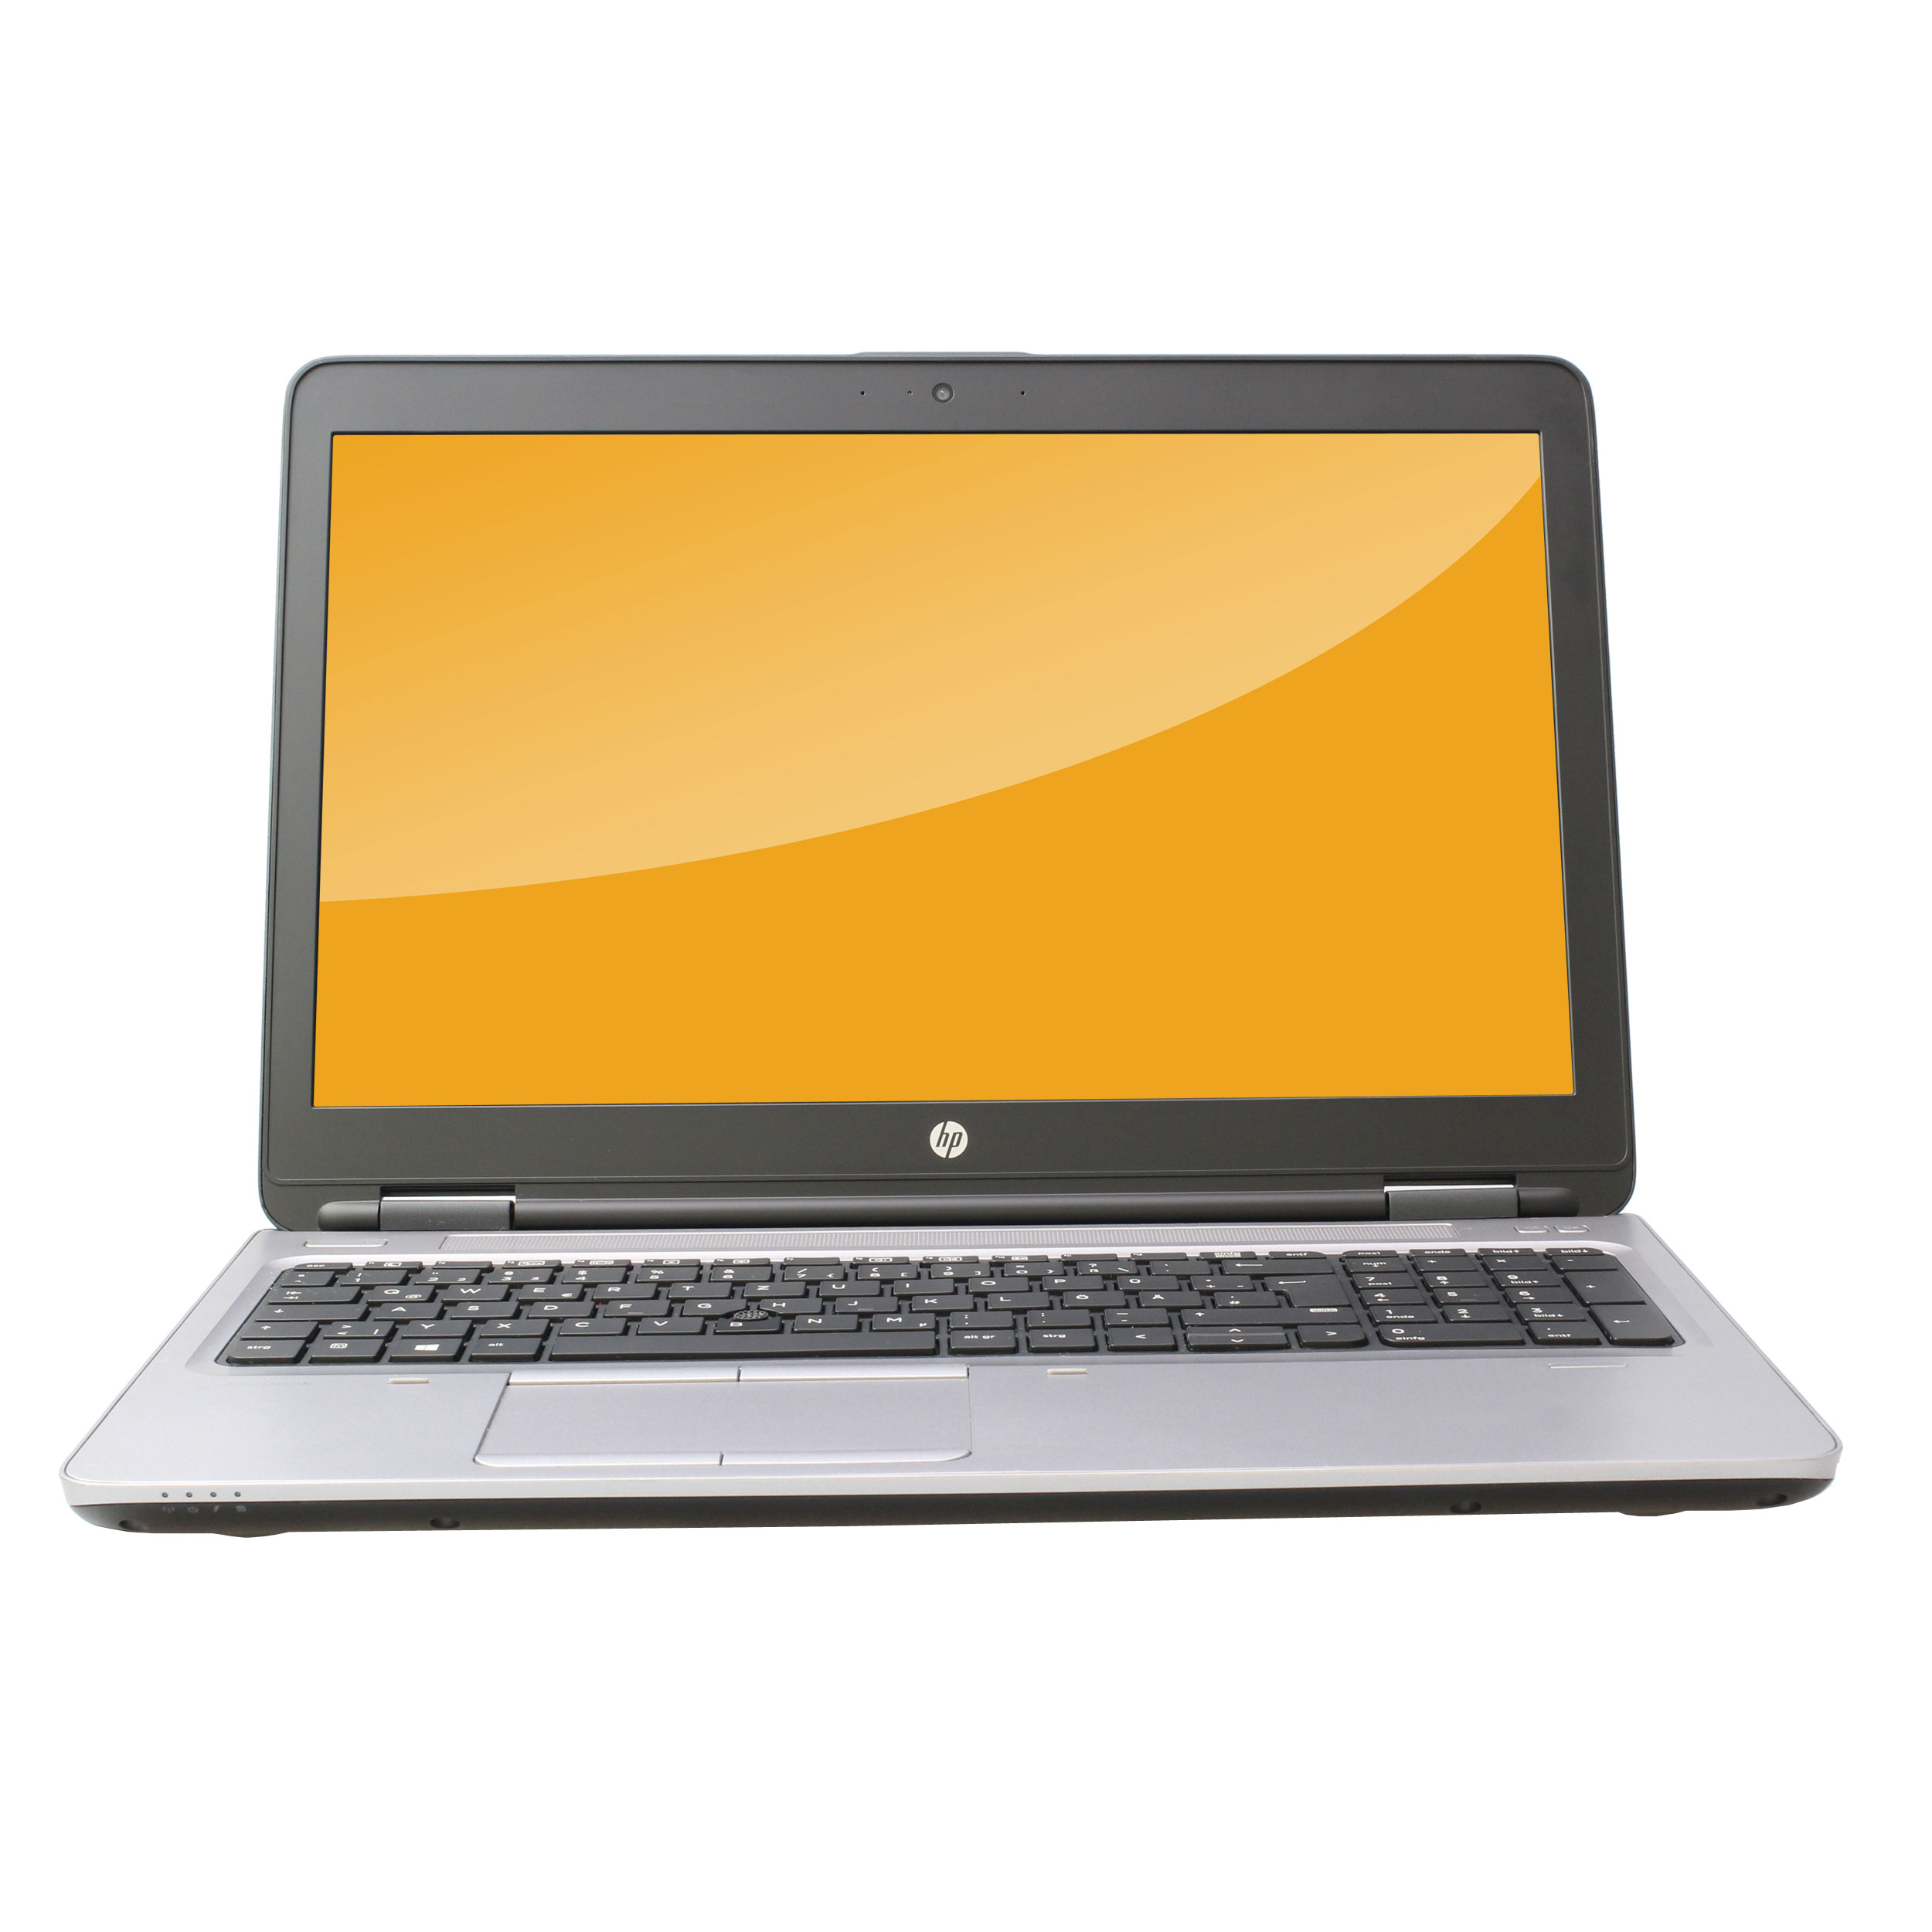 HP - HP ProBook 650 G2